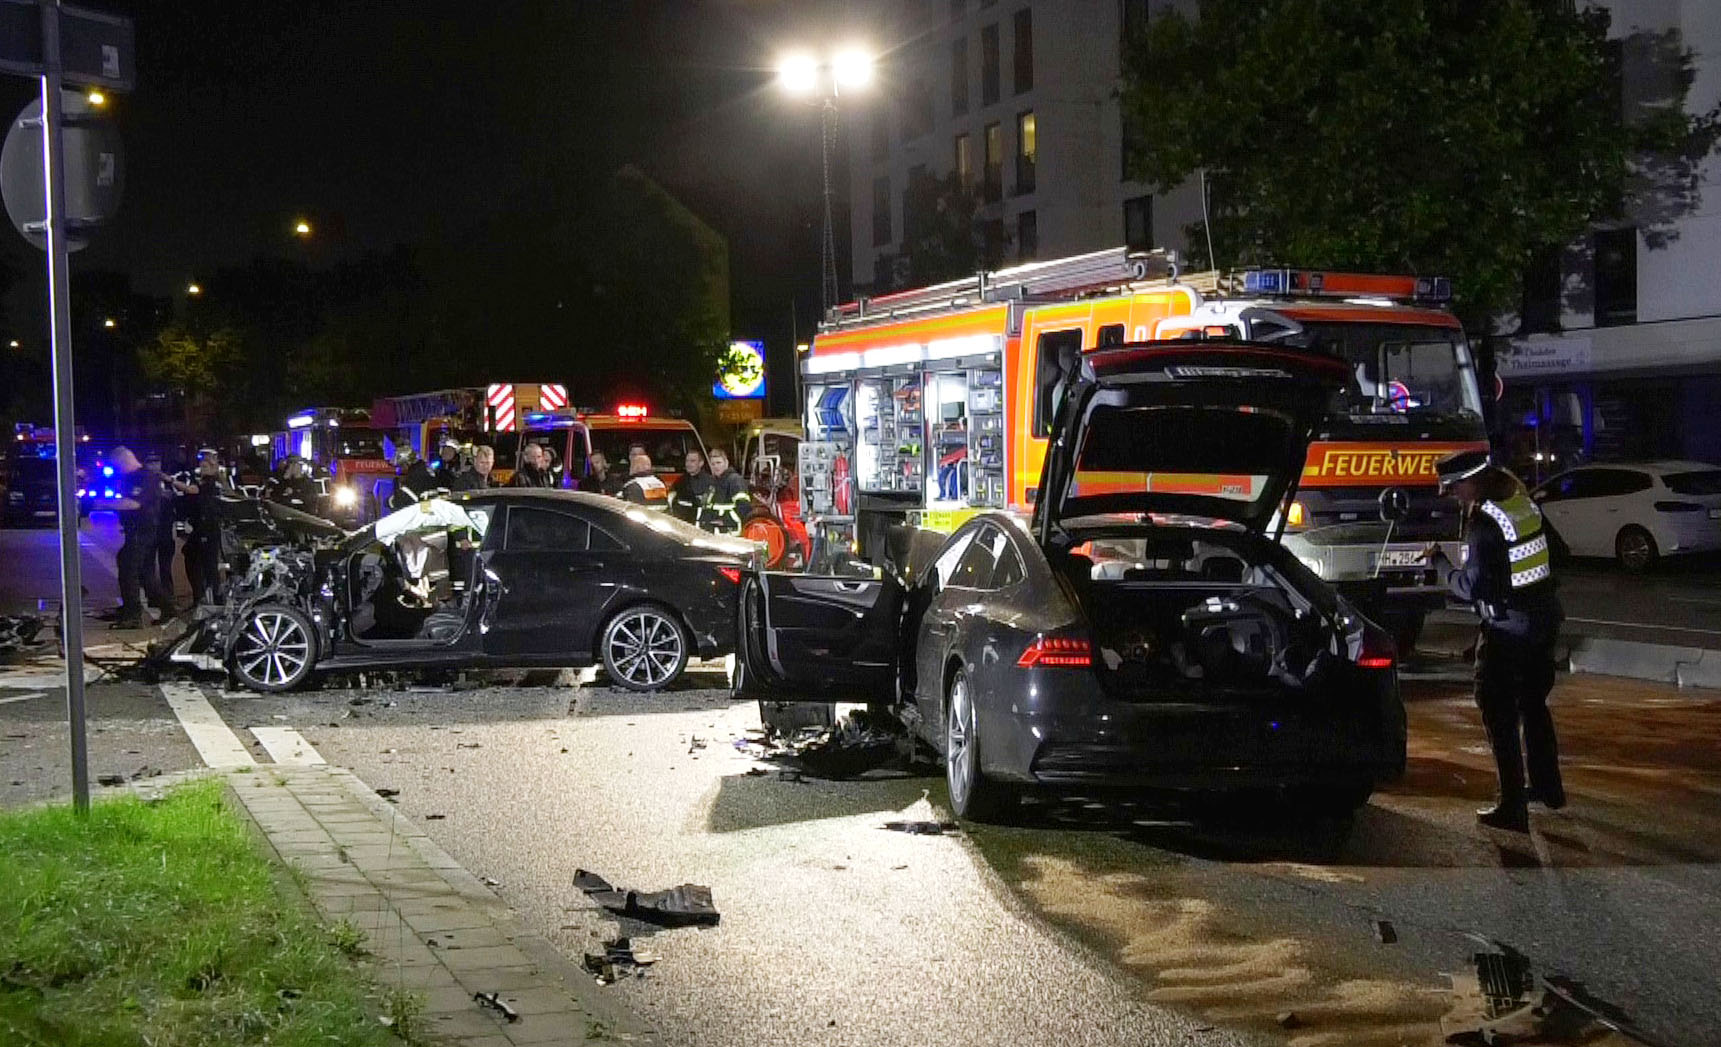 Audi-Fahrer rast am Grundelberg in Gegenverkehr – Mann in lebensgefahr, Schaulustige reagieren aggressiv